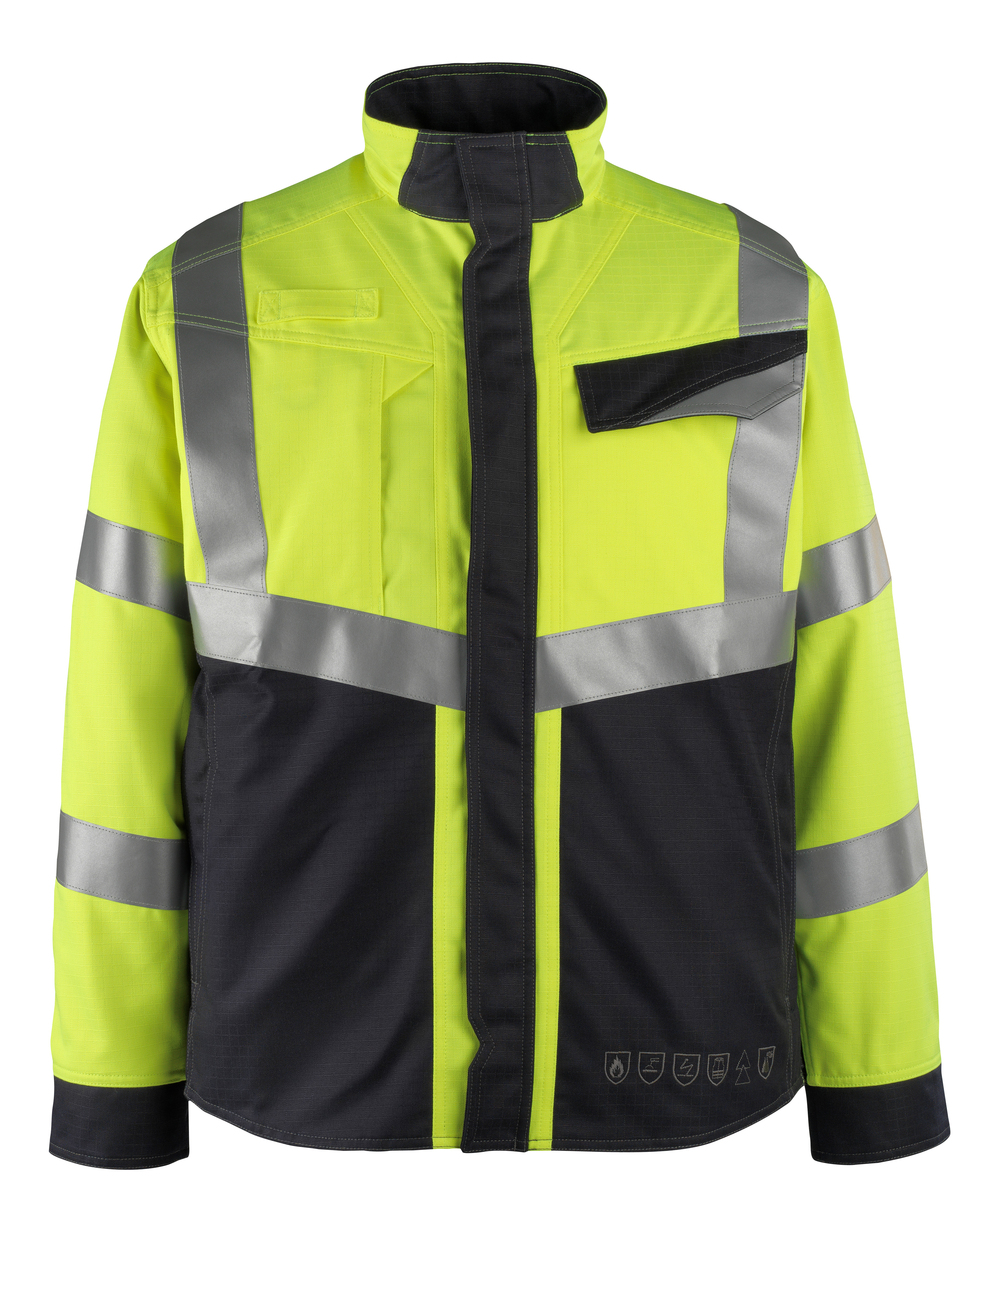 MASCOT-Warnschutz, Warn-Jacke, Arbeitsjacke Multisafe, Biel, 275 g/m², gelb/schwarzblau